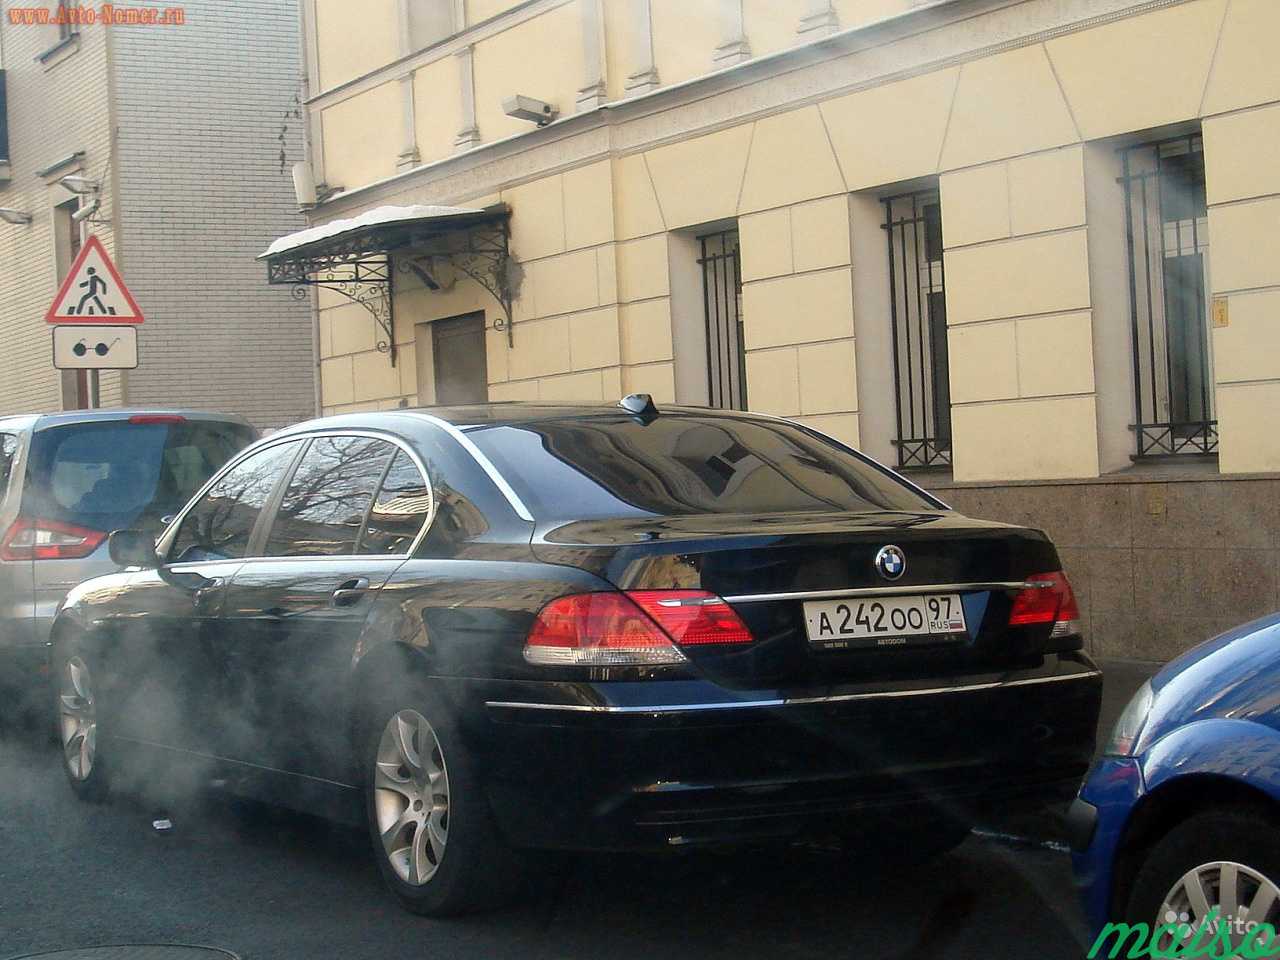 Грз, авто номера, красивые номера в Москве. Фото 1